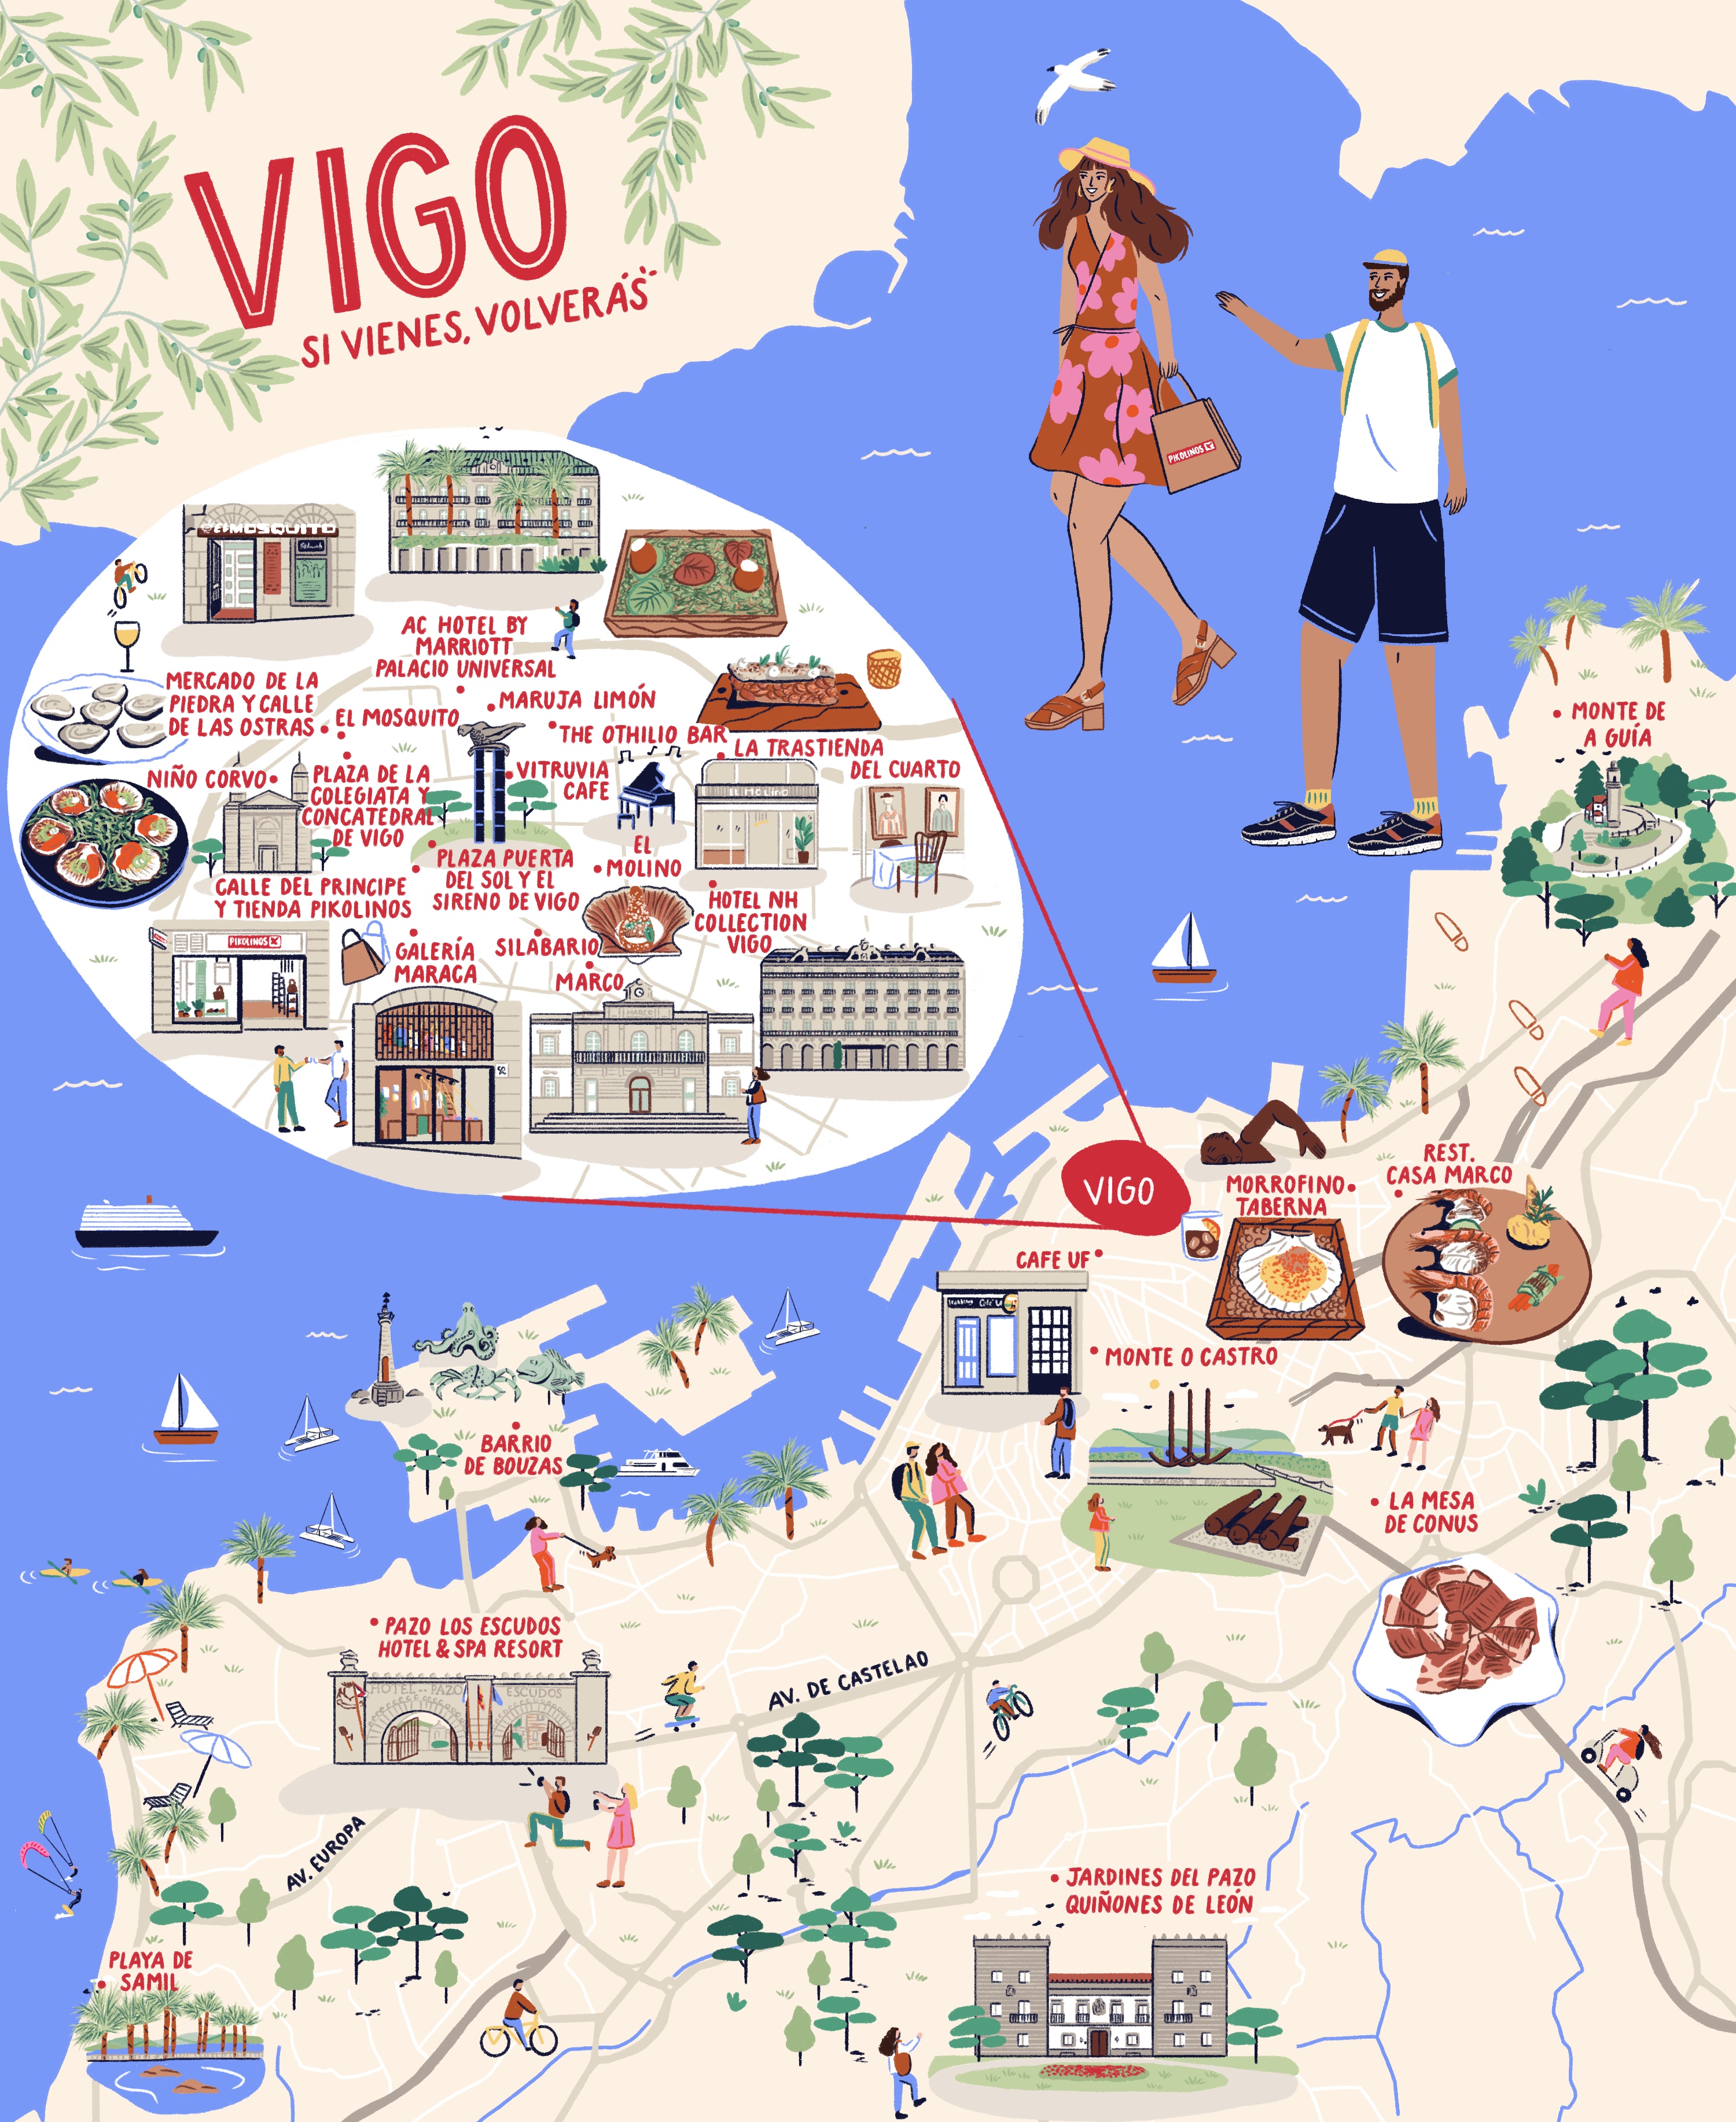 Mapa ilustrado de la ciudad de Vigo